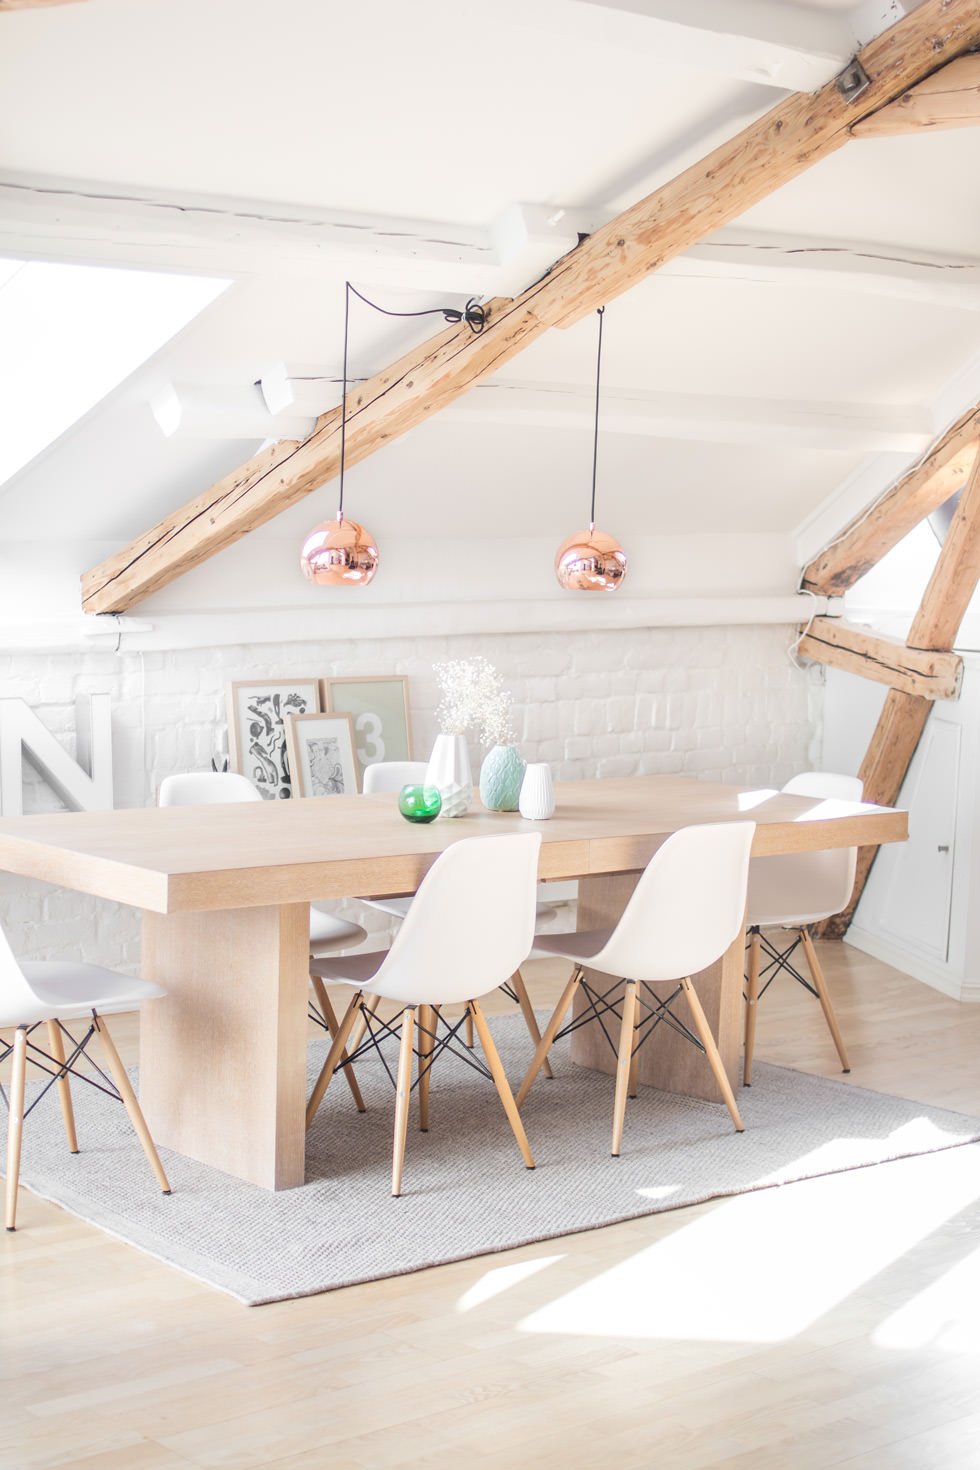 Idee illuminazione attico moderno, stile scandinavo con pochi oggetti e ben organizzati - pareti bianchi uniti ad arredi in legno chiaro e caloroso